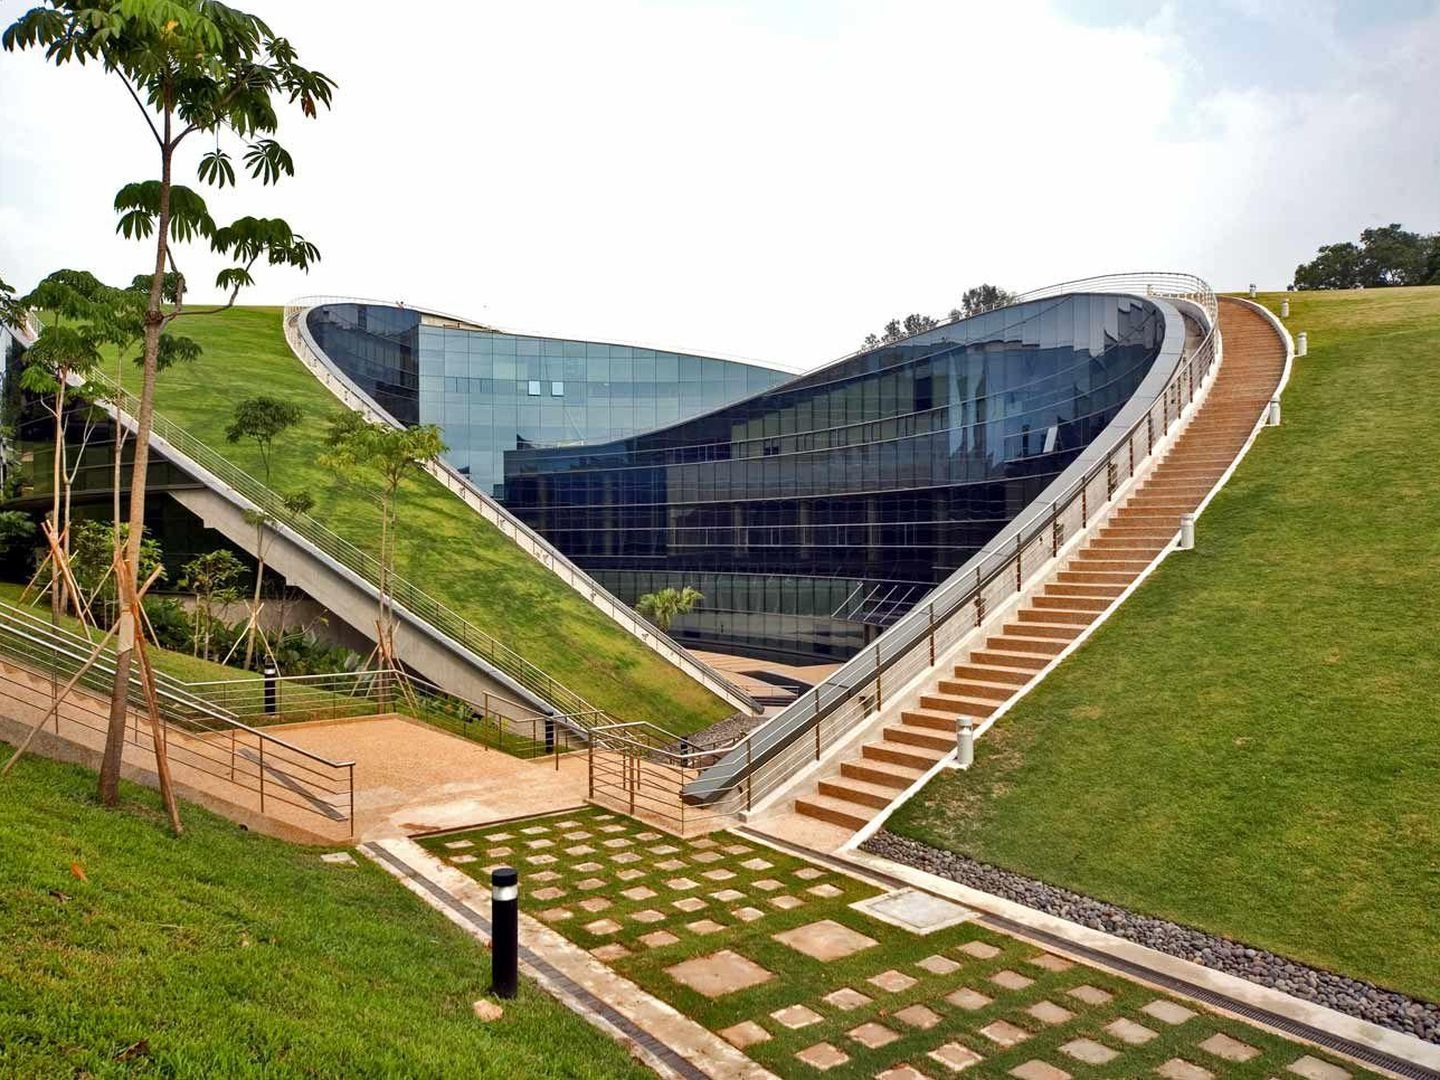 La Escuela de Arte, Diseño y Medios de la Universidad Tecnológica de Nanyang, en Singapur, se aloja en un edificio que se diseñó con la idea de convertir los tejados en zonas verdes para encajar perfectamente con su entorno. (EFE)